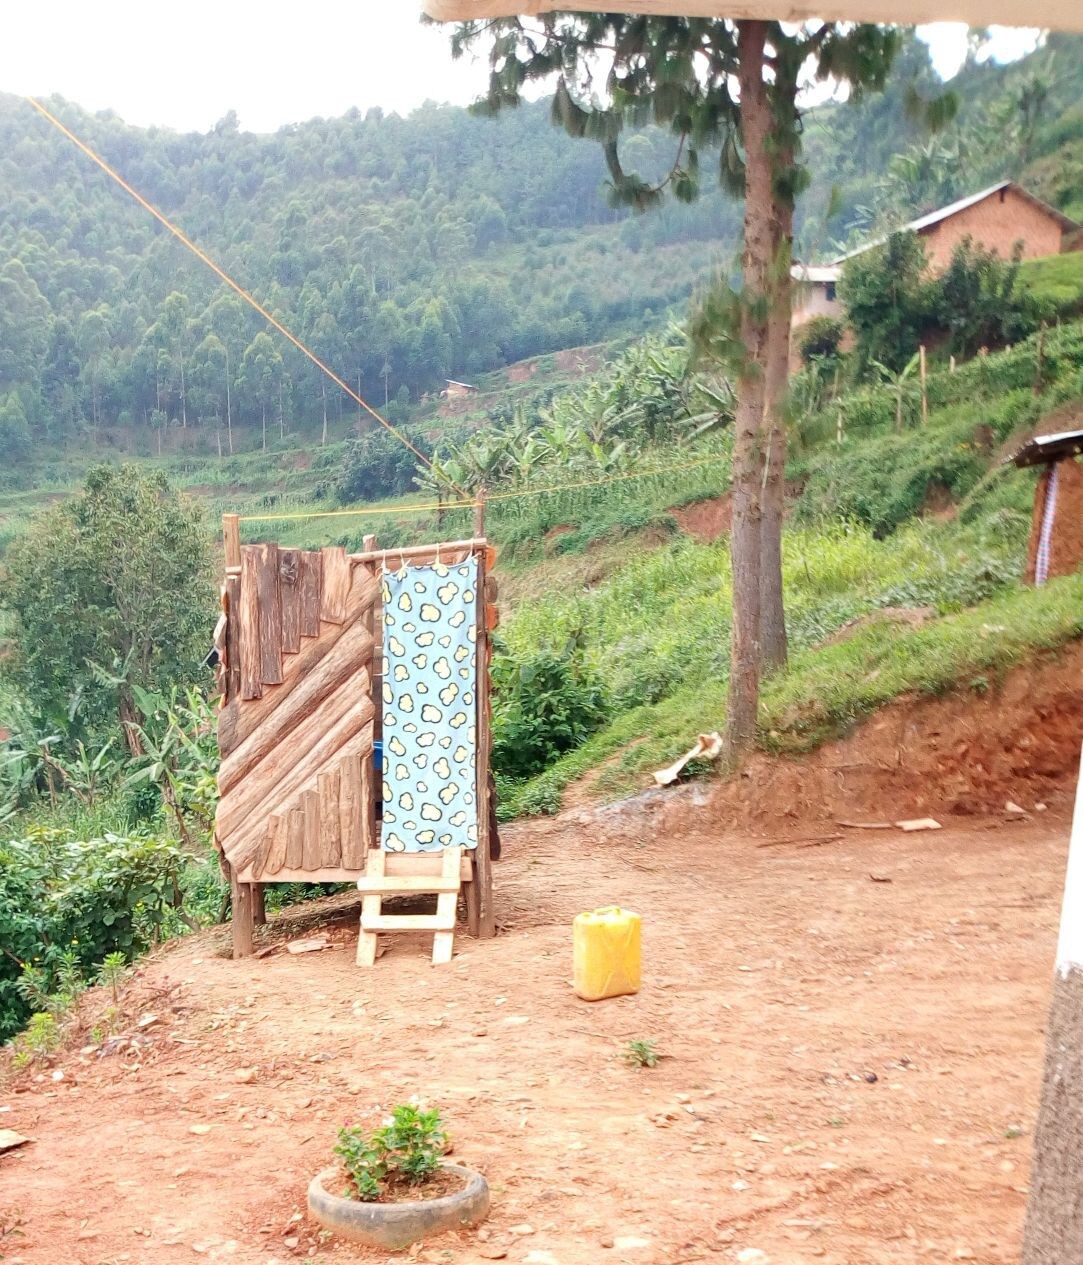 Lake Bunyonyi Community Rest House